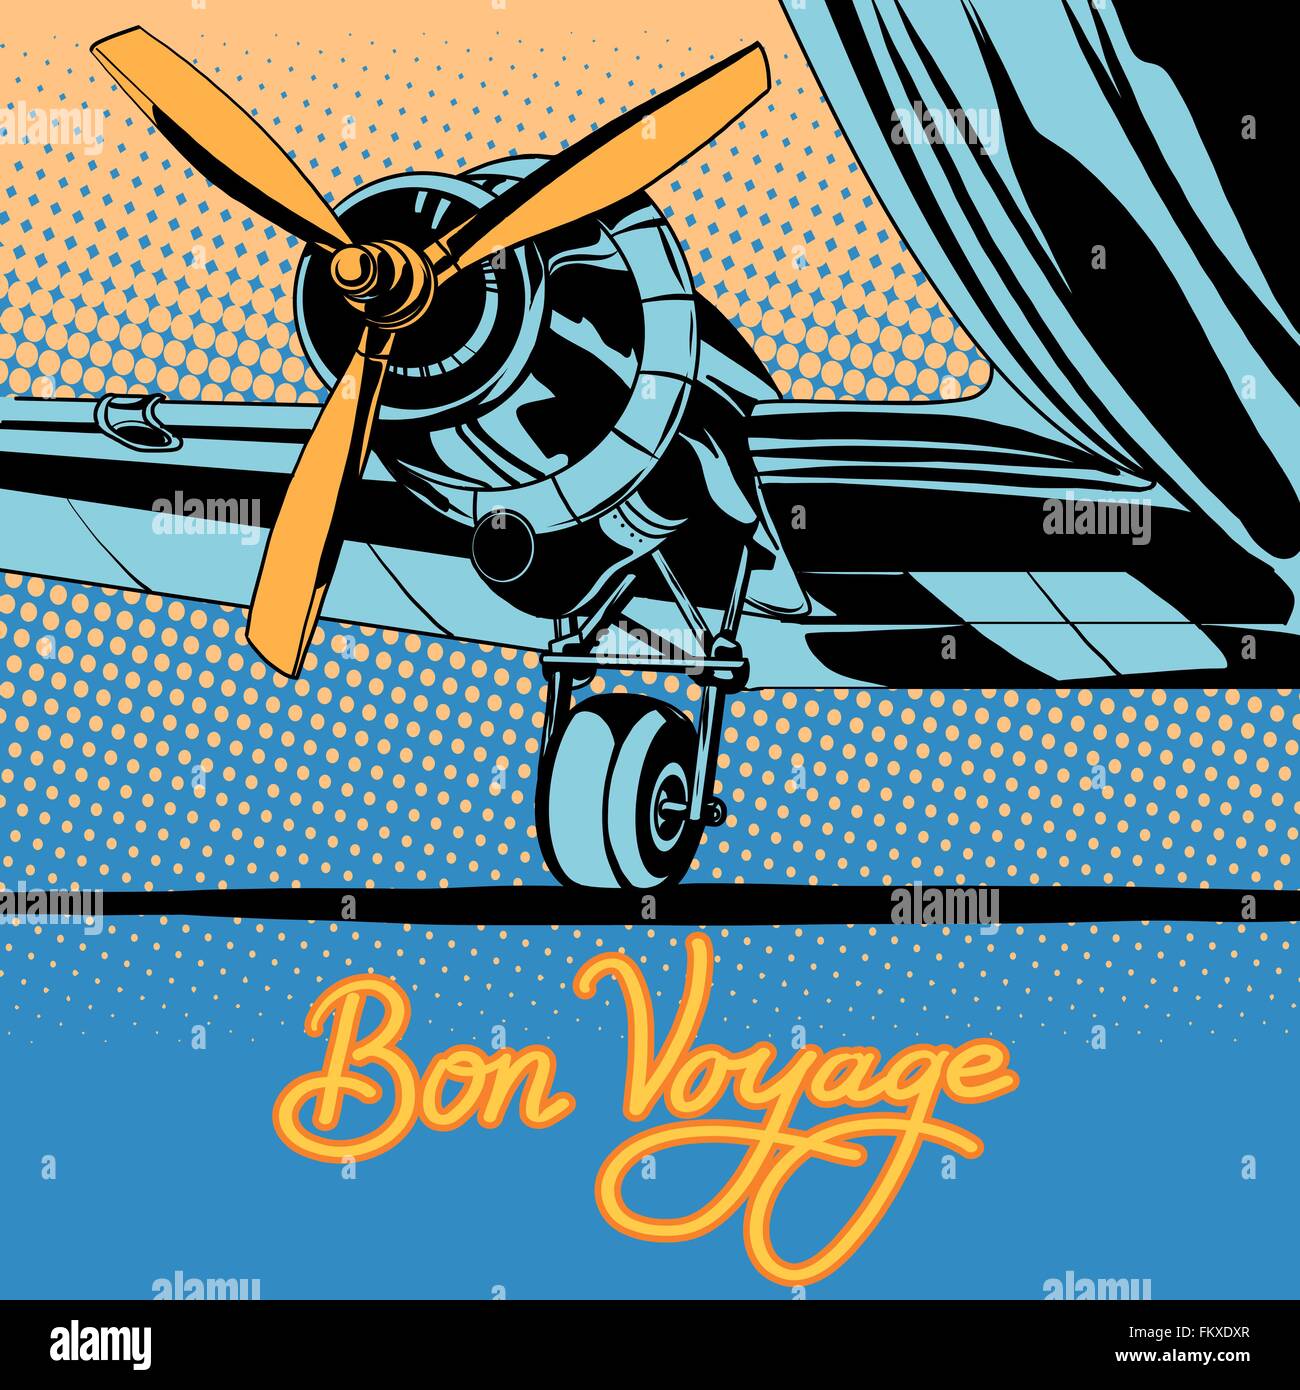 Bon voyage avion voyage rétro poster Illustration de Vecteur